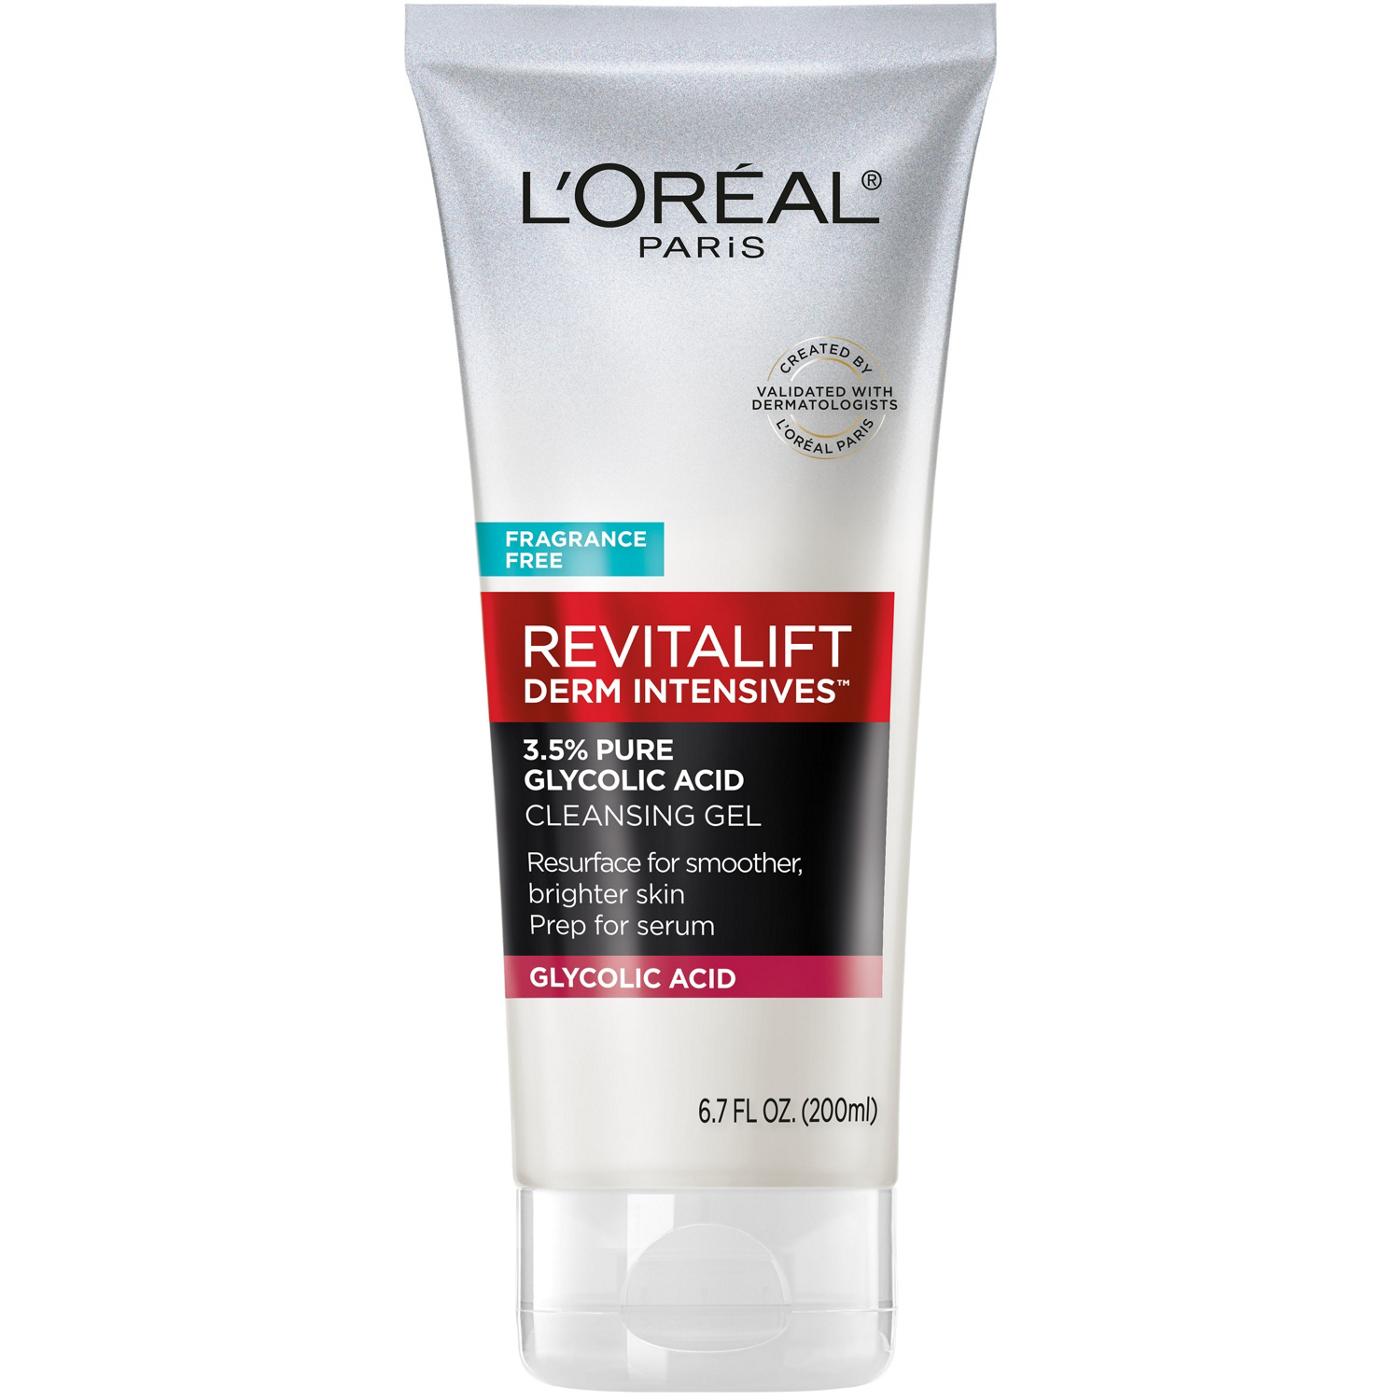 L'Oréal Paris Revitalift Derm Intensives Glycolic Acid Cleanser; image 1 of 6